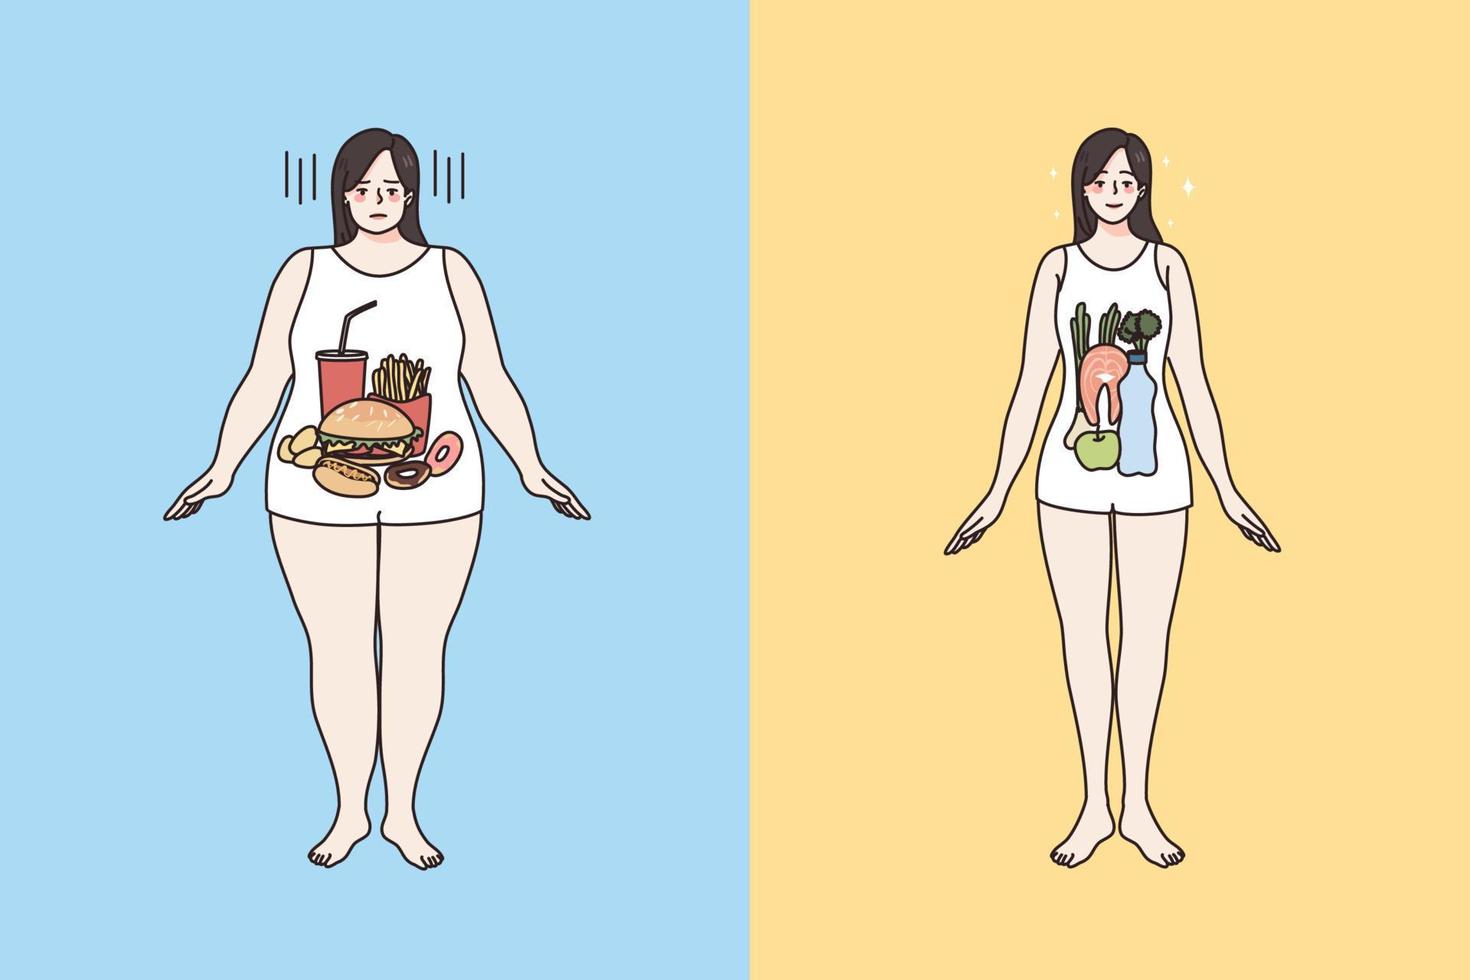 friska och ohälsosam mat och kropp begrepp. ung ledsen fett över vikt kvinna med snabb mat inuti och smal passa friska leende kvinna med färsk organisk diet i mage vektor illustration